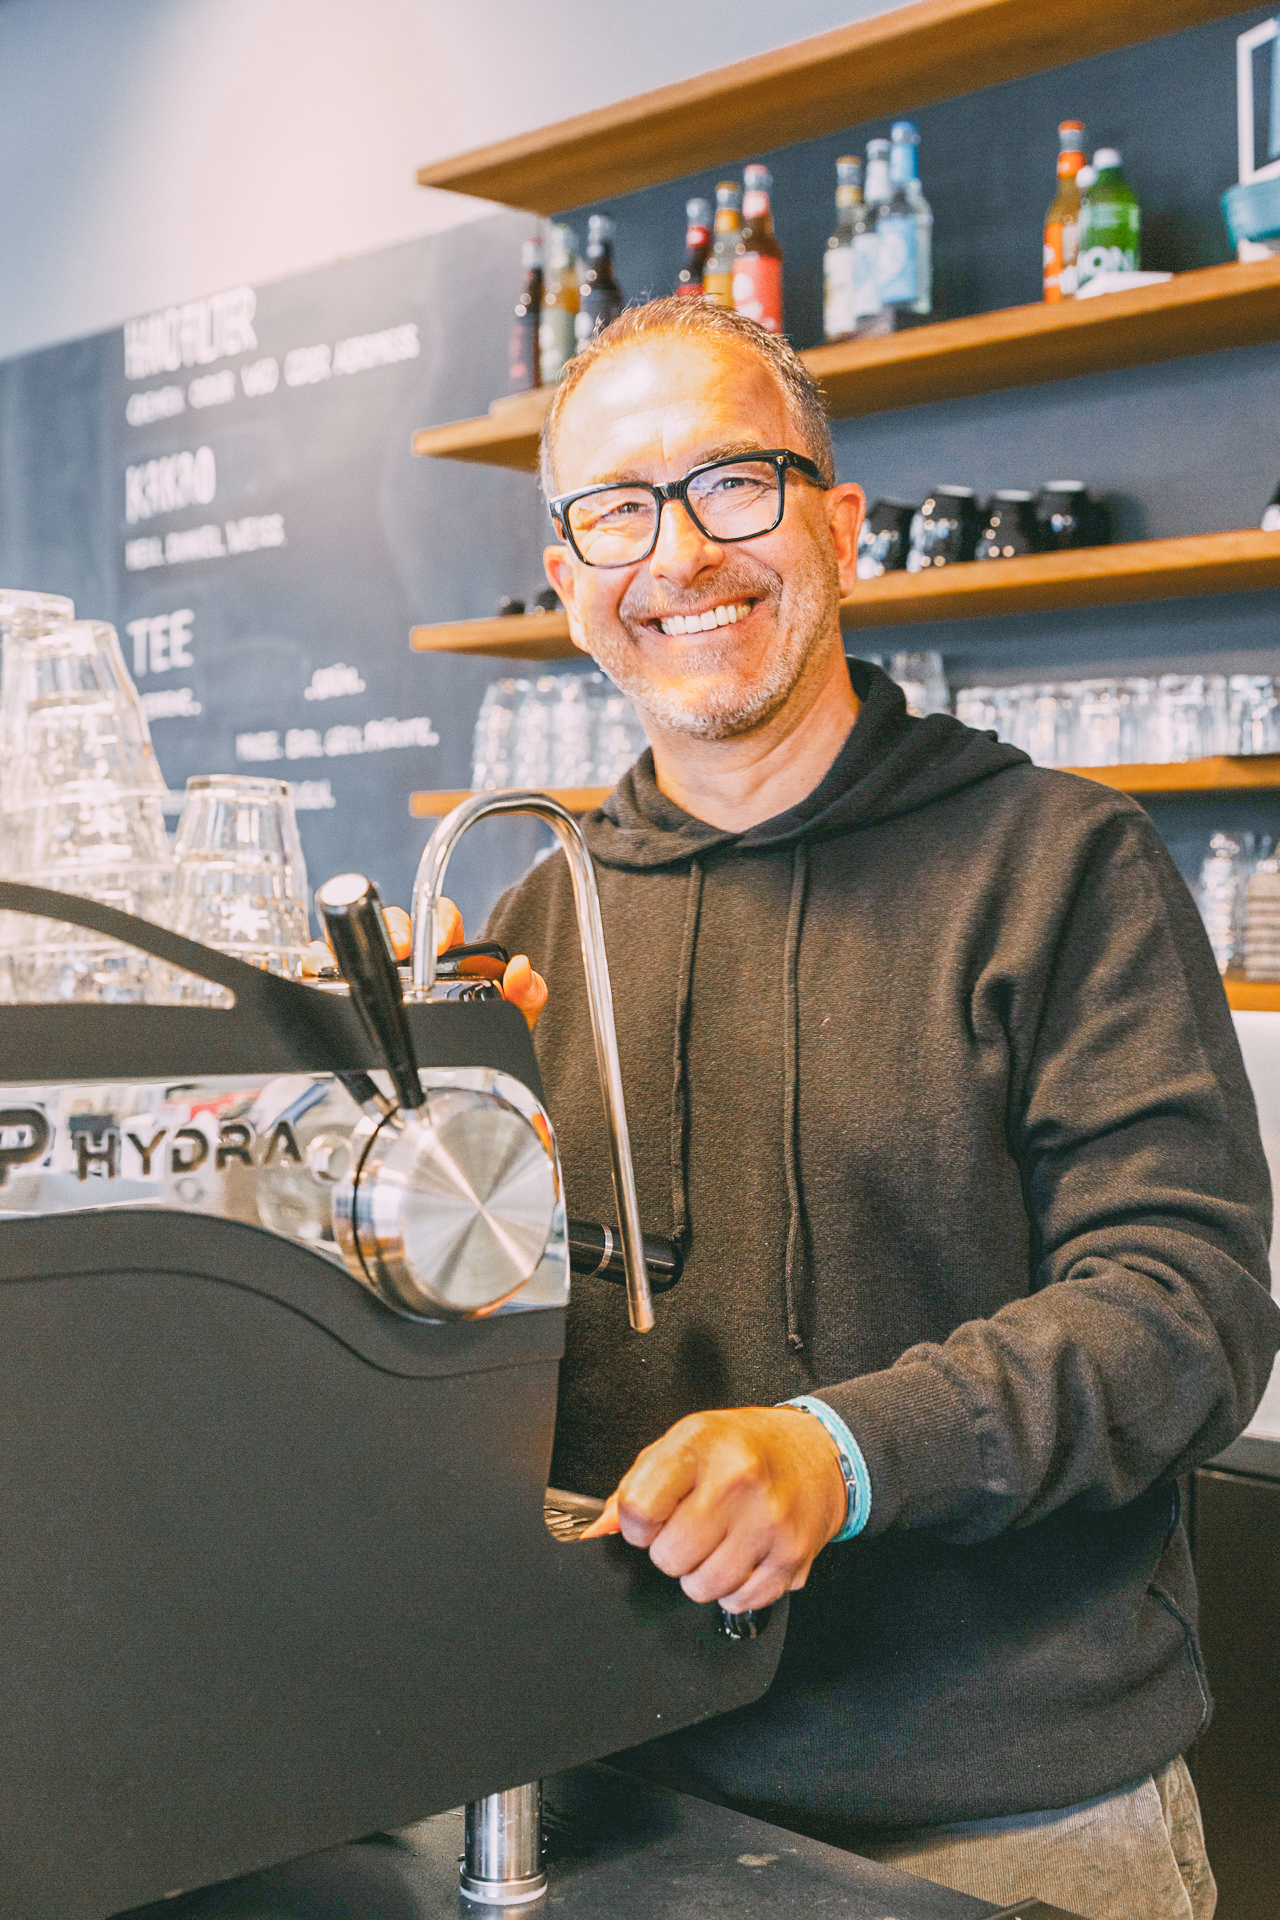 Inhaber von der impuls Kaffeerösterei in Kiel: Rainer Burkhardt an der Kaffeemaschine